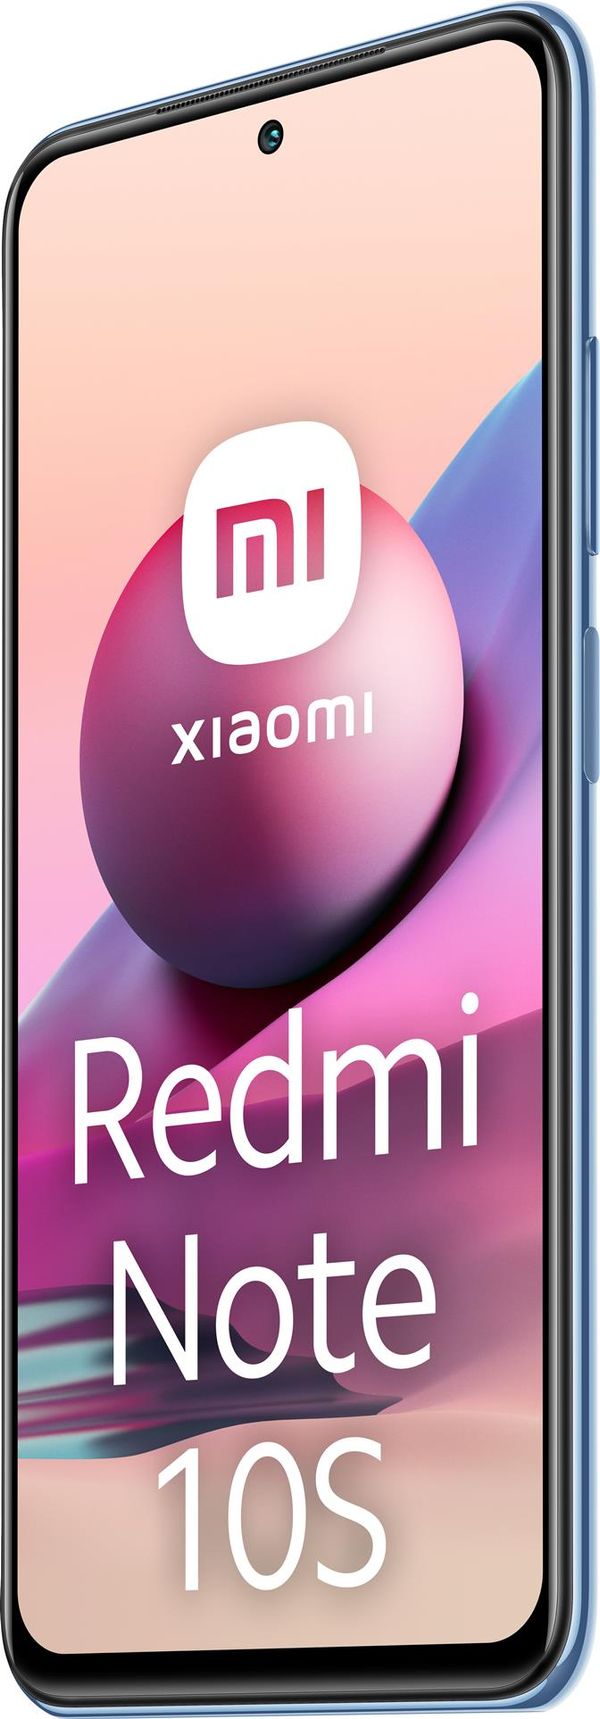 RE-951K7BN60001-PQ smartphone reacondicionado xiaomi redmi note 10s ocean blue 6g ram 128gb rom grado a